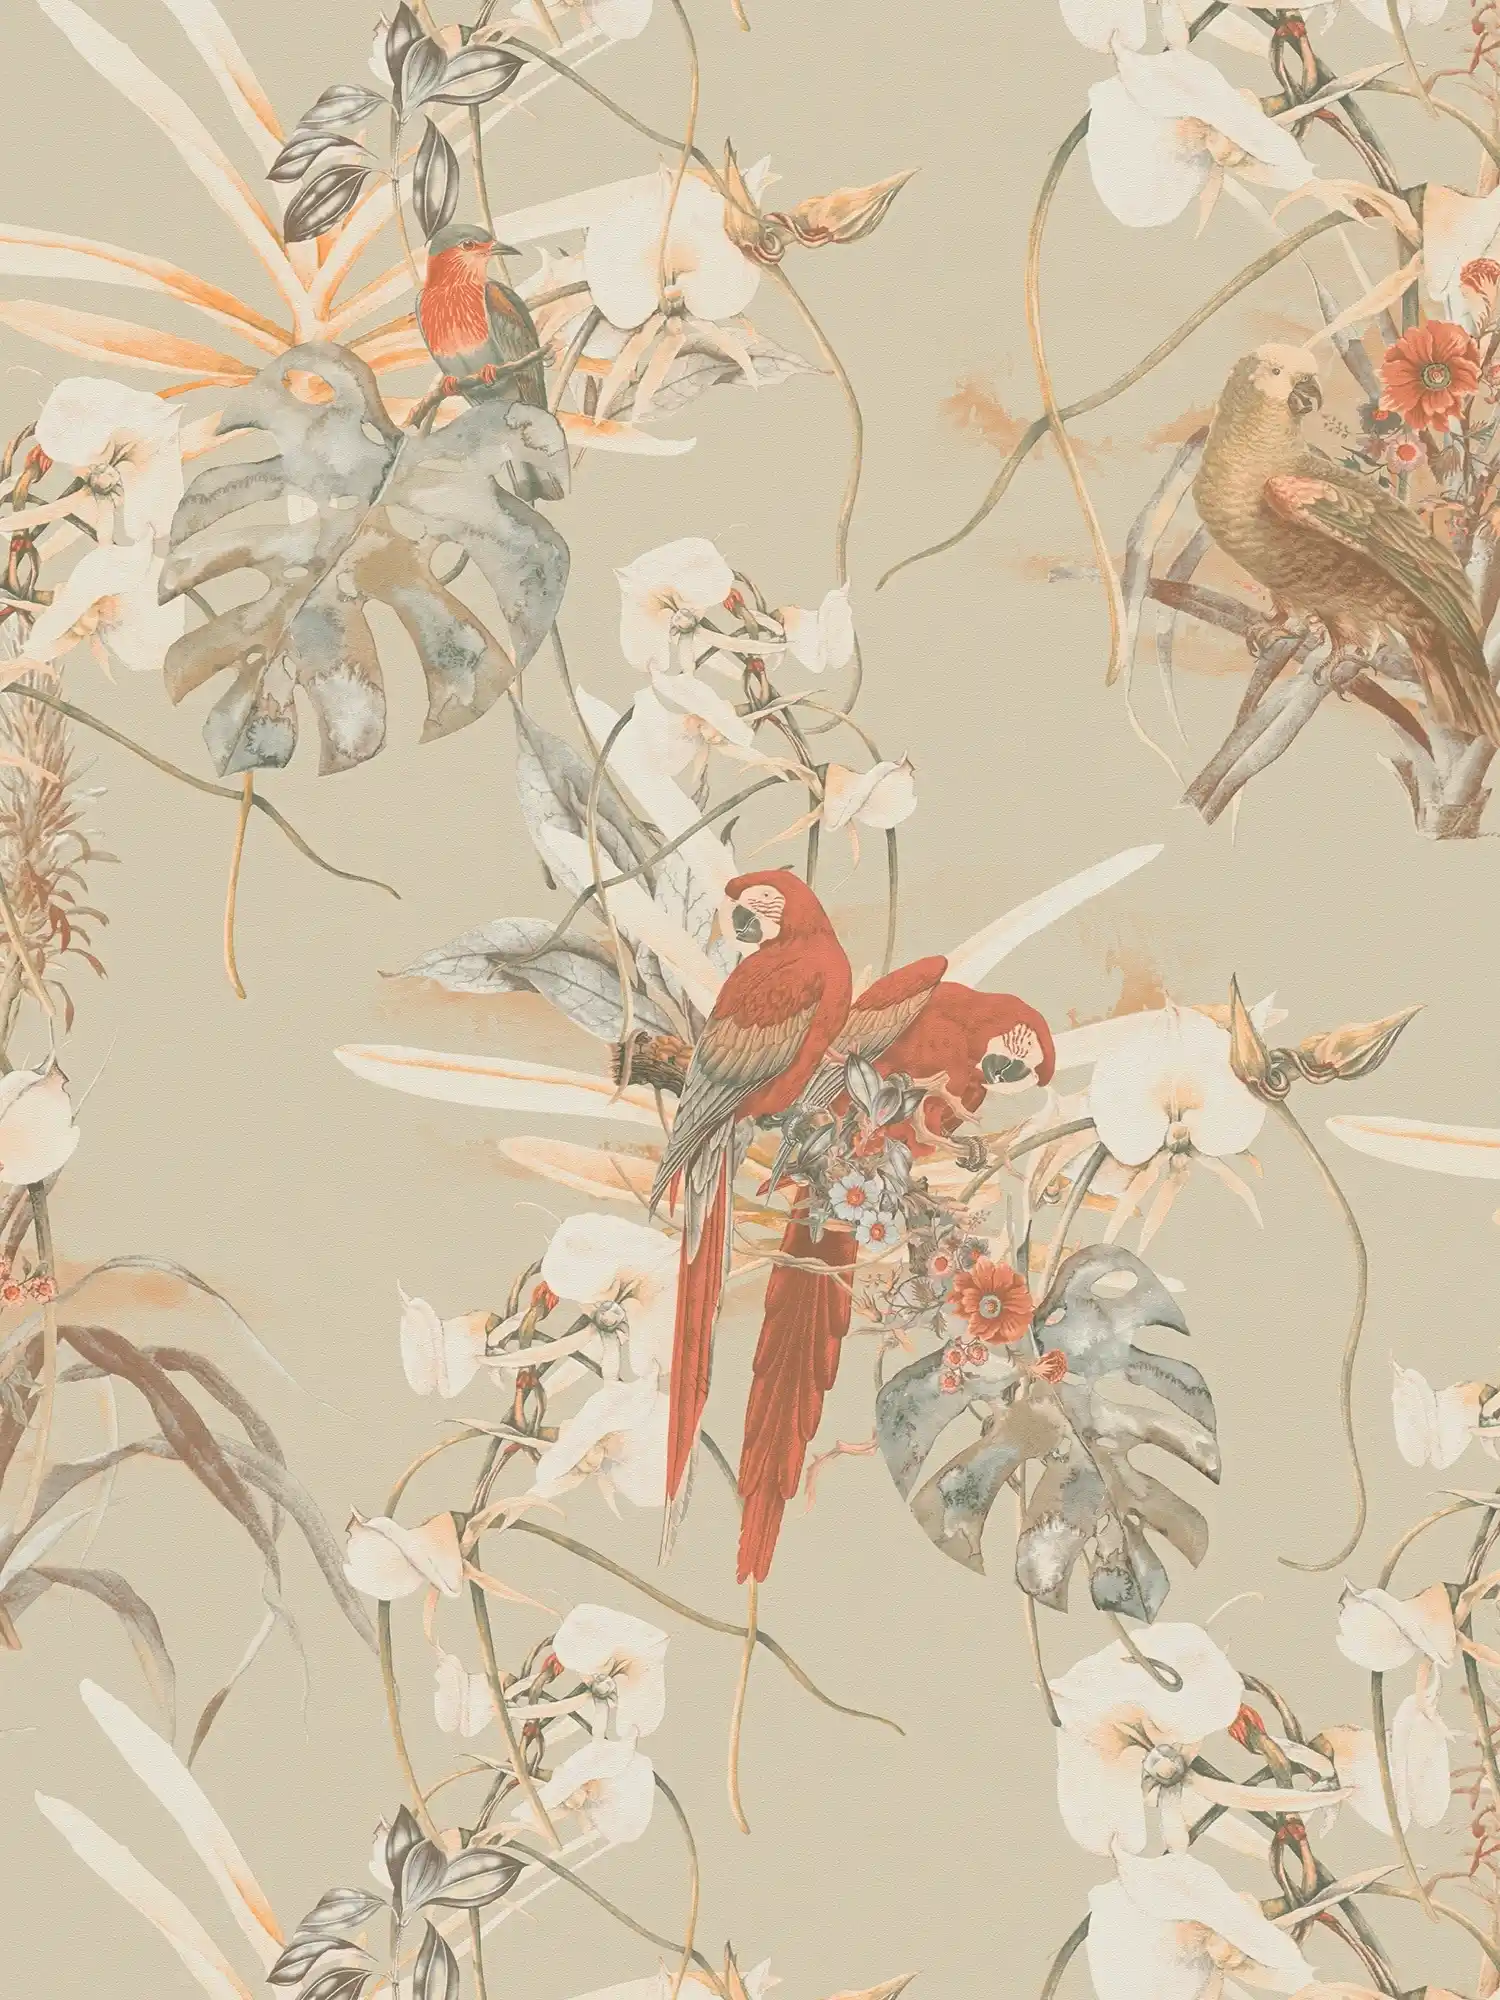 Tapete tropisches Design, Papagei & exotische Blumen – Beige, Braun
